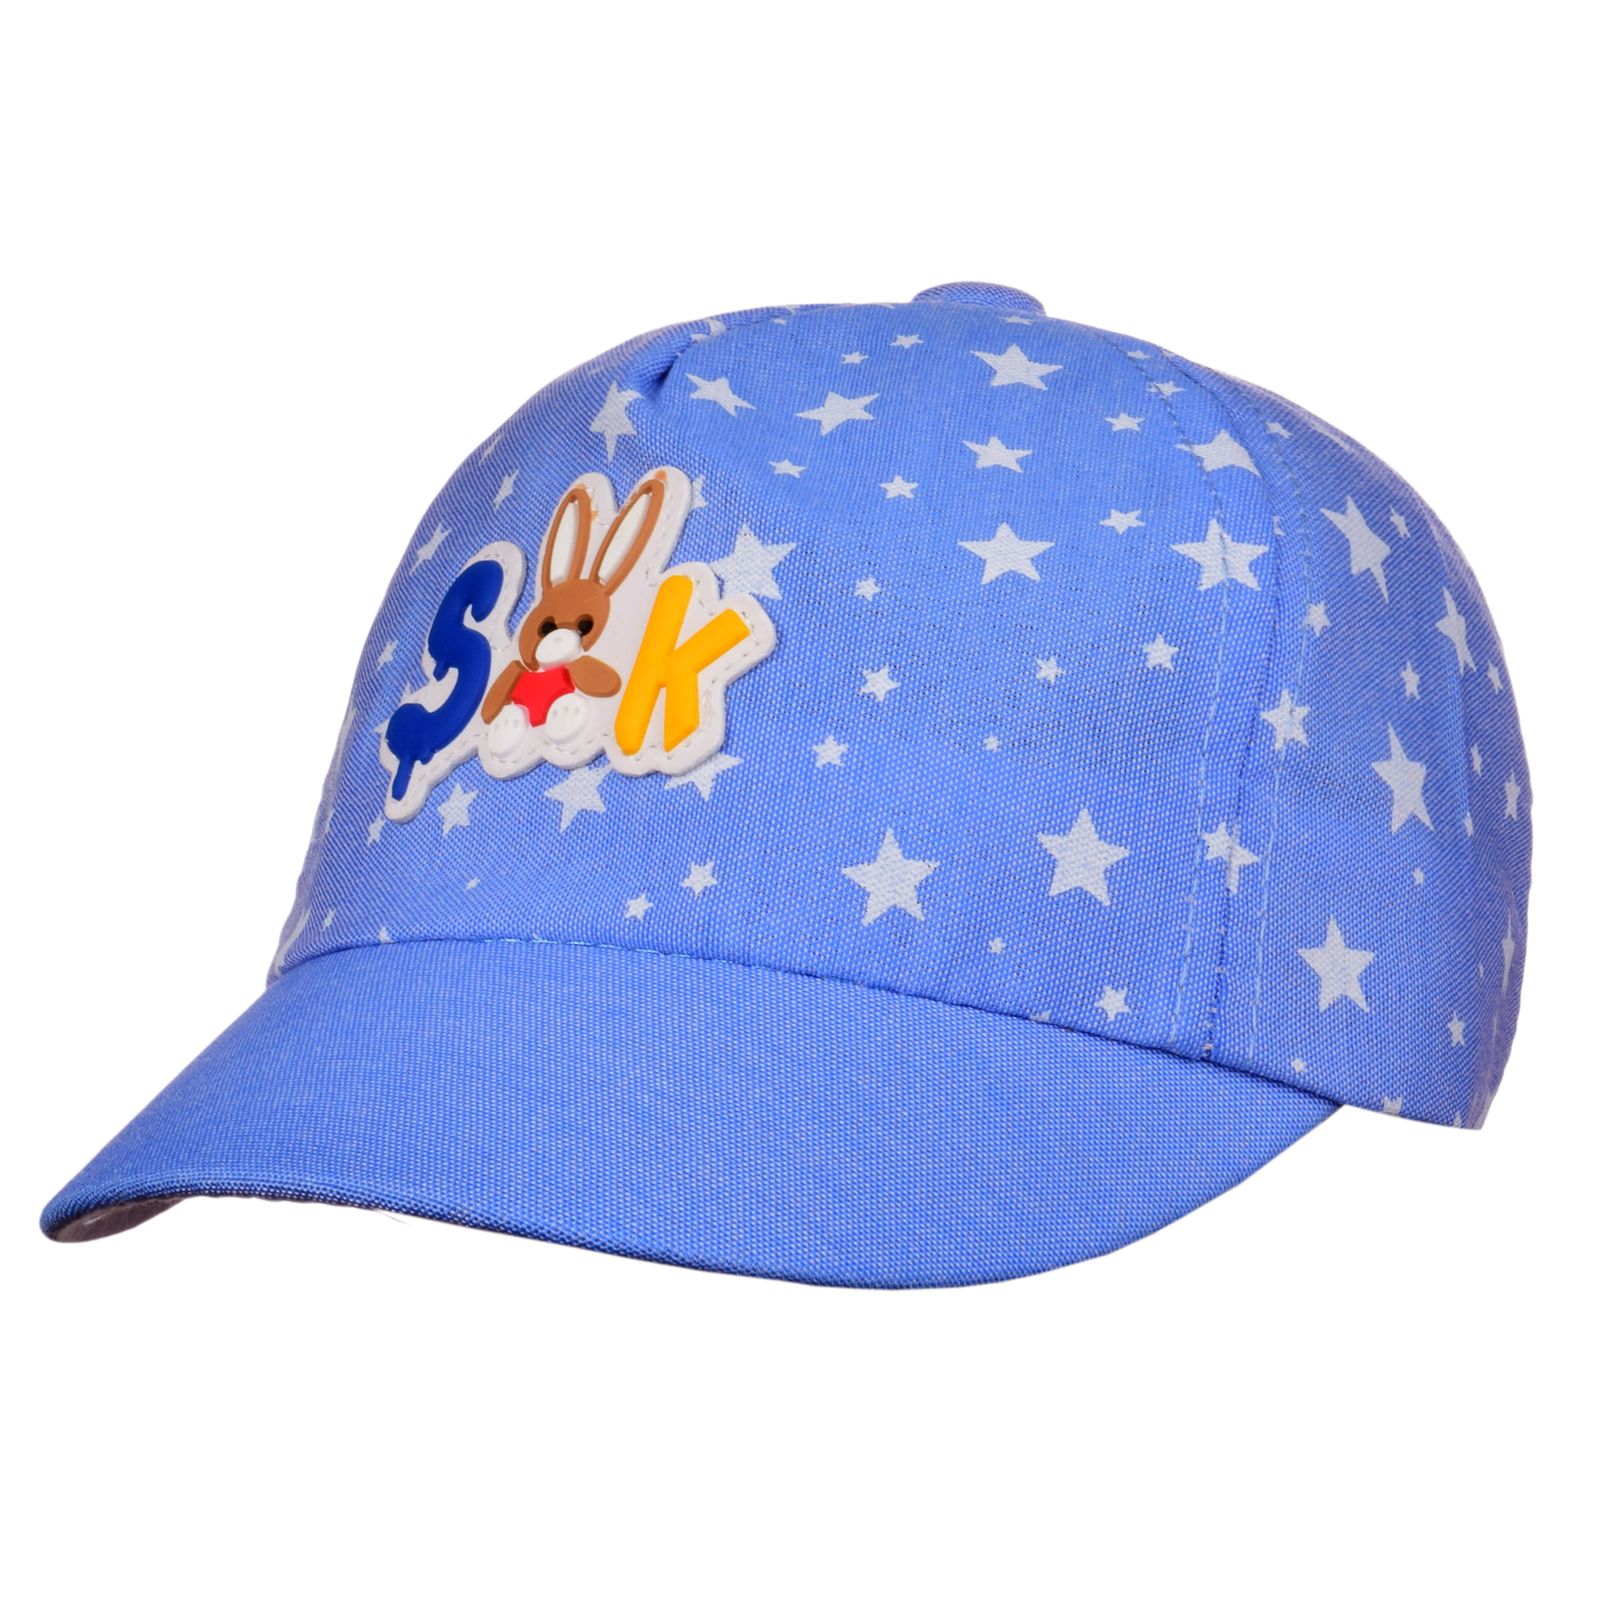 کلاه کپ بچگانه طرح ستاره کد N31273 -  - 2